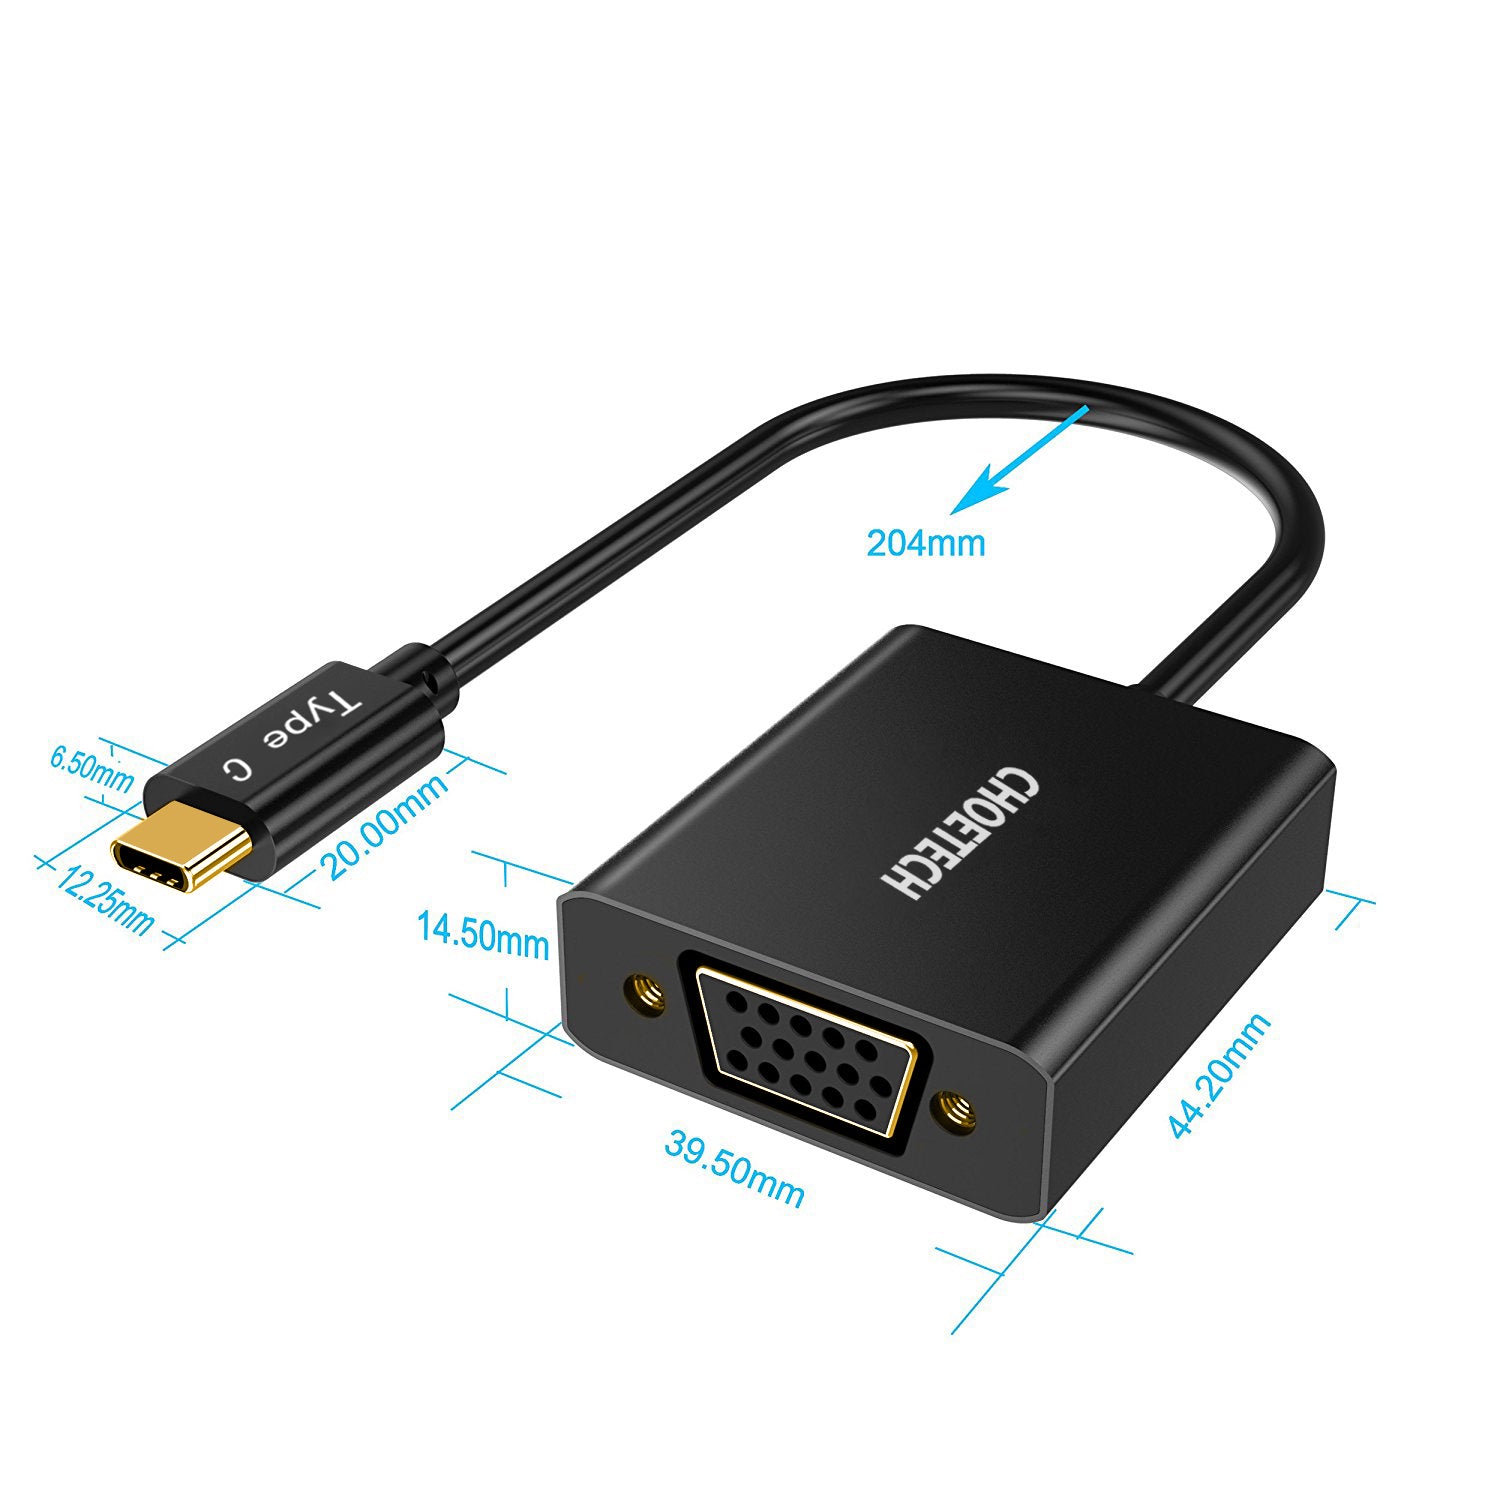 HUB-V01 Choetech 1080p Compatible USB 3.1 Adaptador USB tipo C a VGA (compatible con puerto Thunderbolt 3) para MacBook, Chromebook Pixel y más dispositivos tipo C